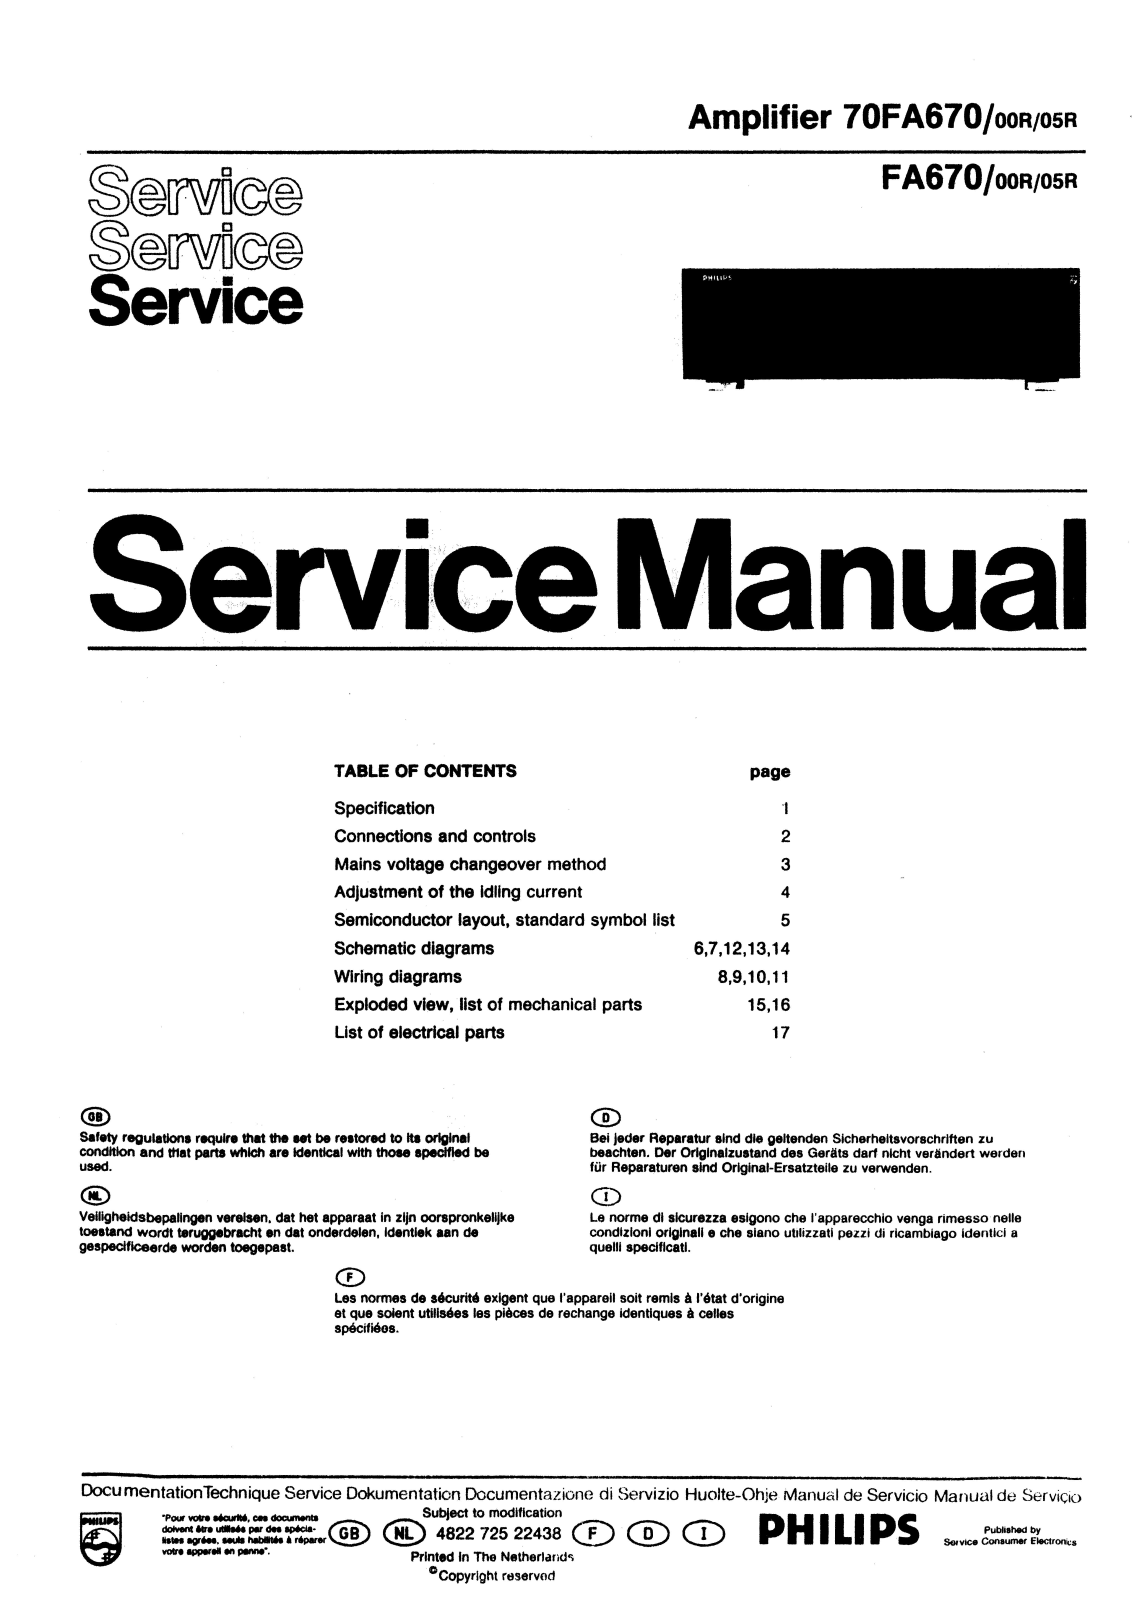 Philips FA-670 Service Manual